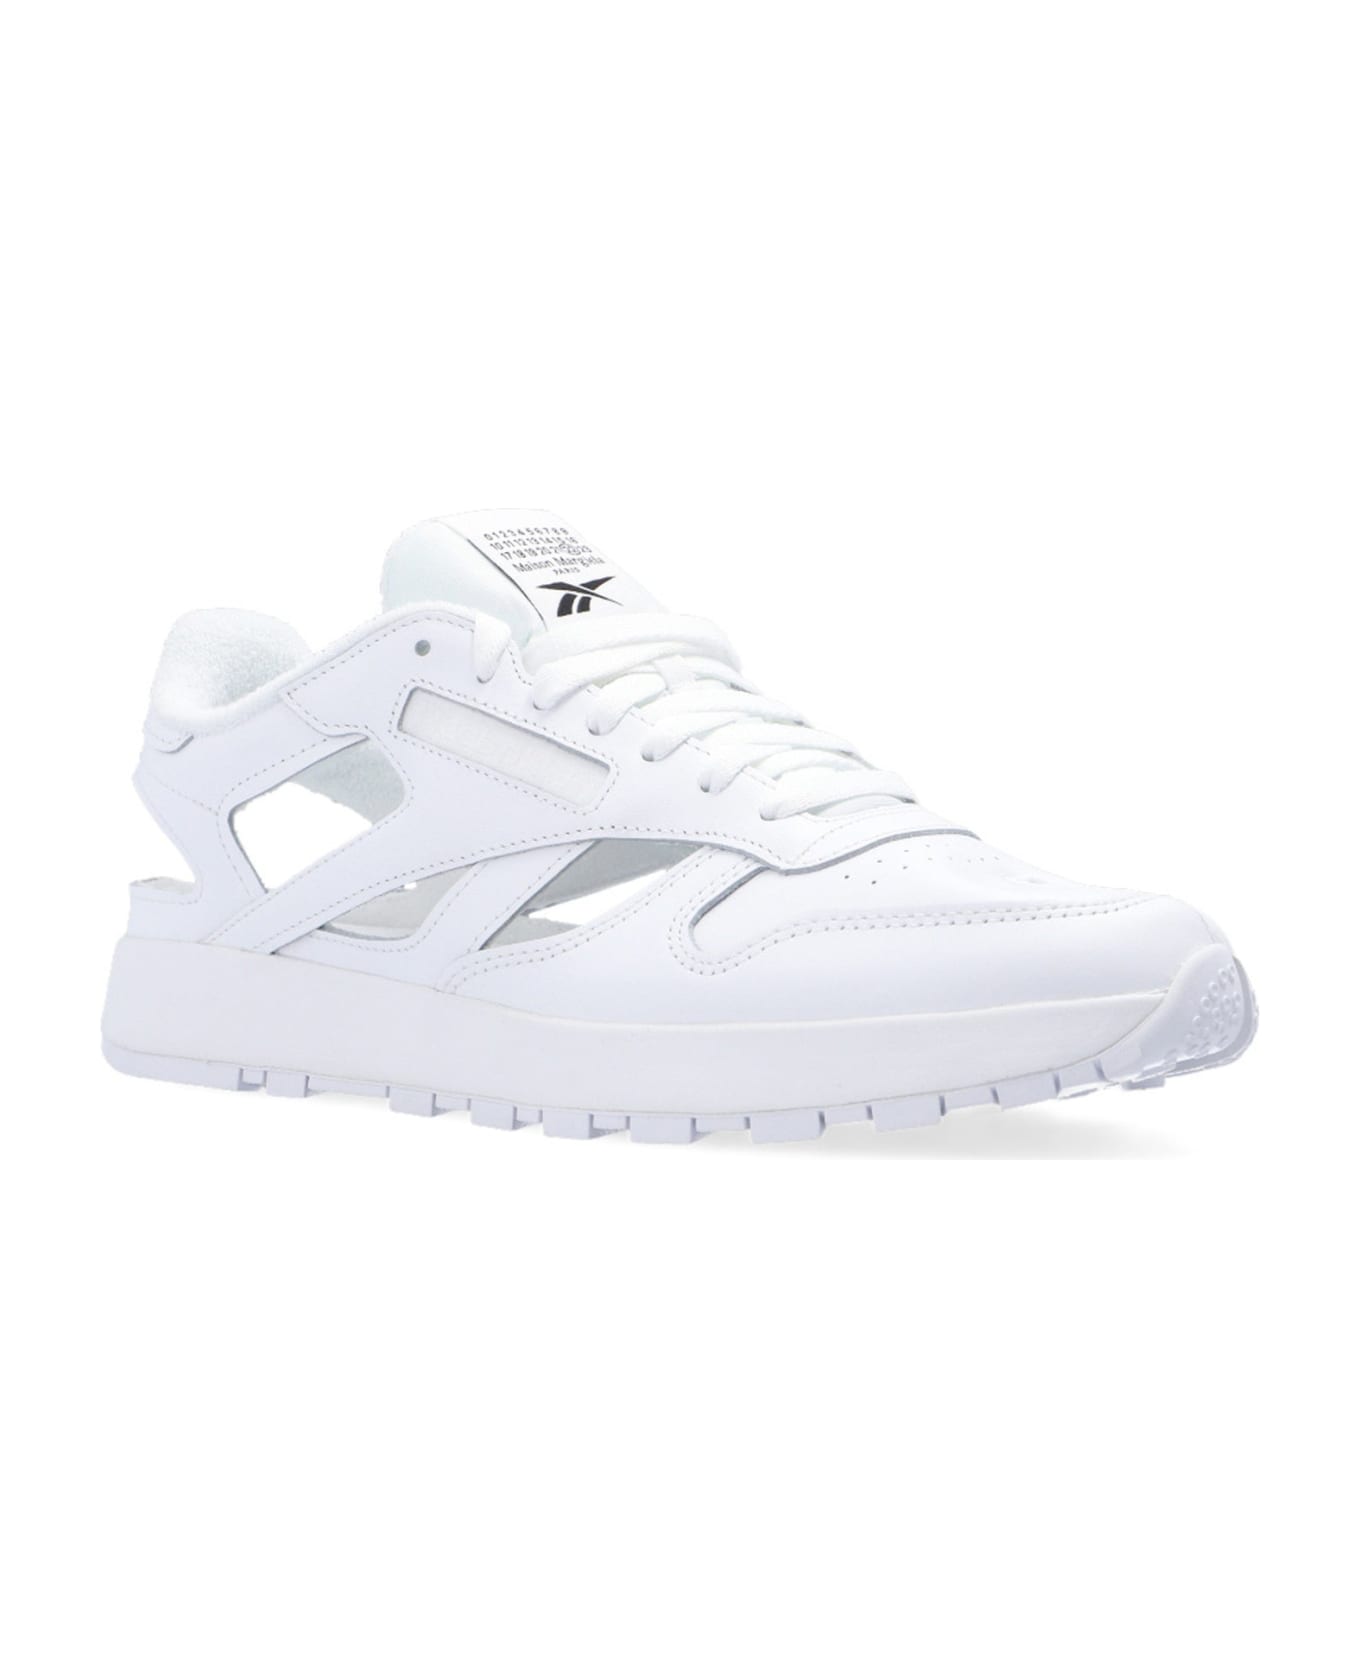 Maison Margiela Leather Sneaker - White スニーカー